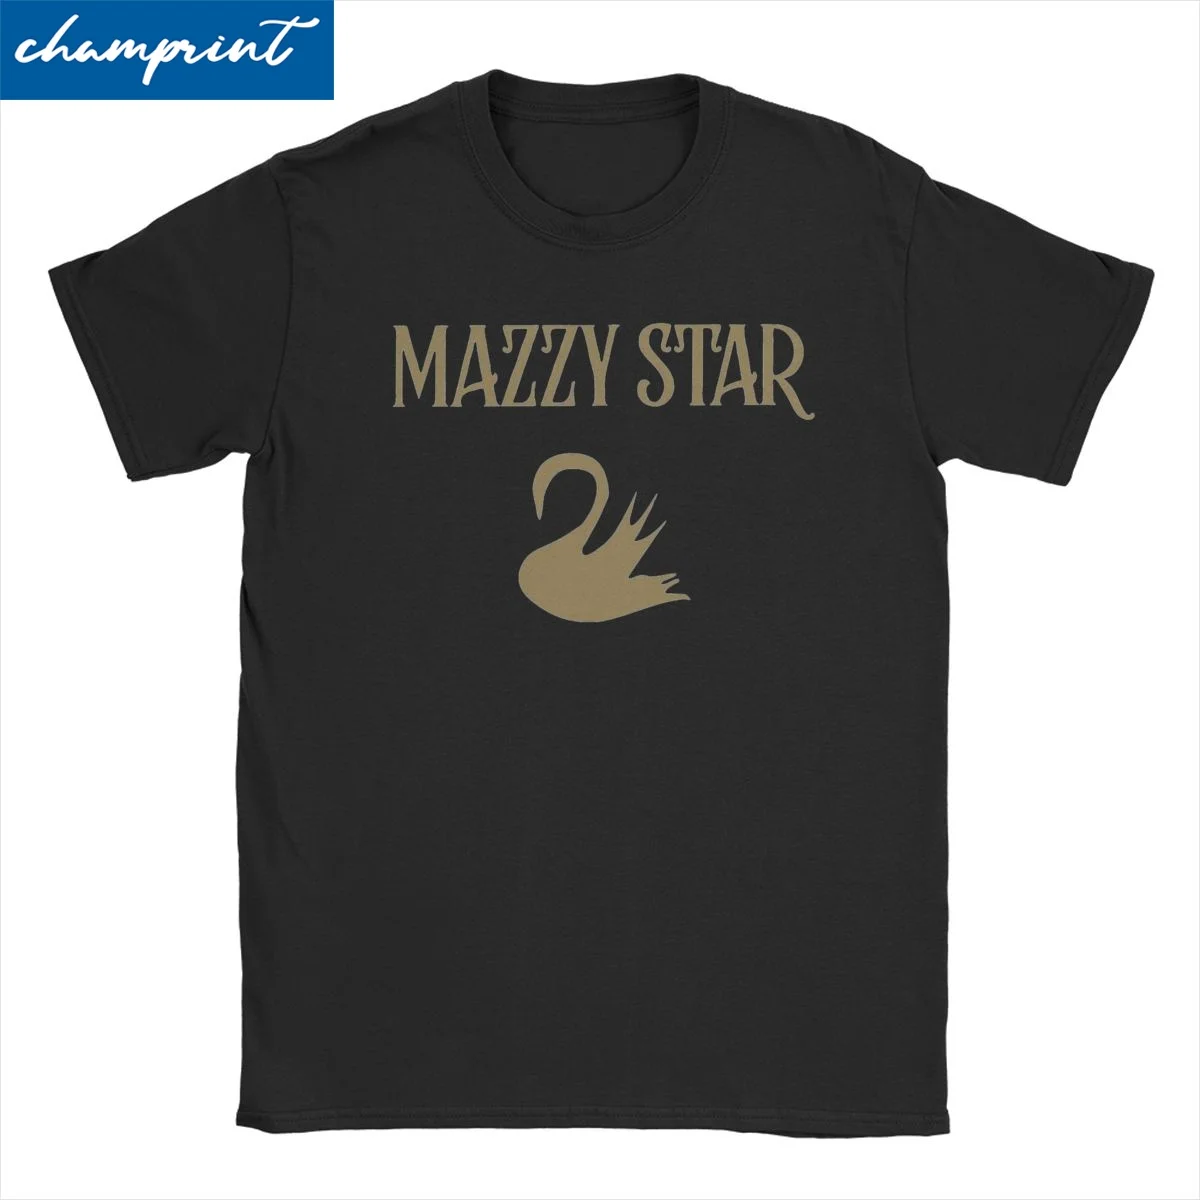 

Футболки Mazzy Star с альтернативной музыкой для мужчин и женщин, хлопковые футболки в стиле панк-рок для отдыха, дизайнерская одежда